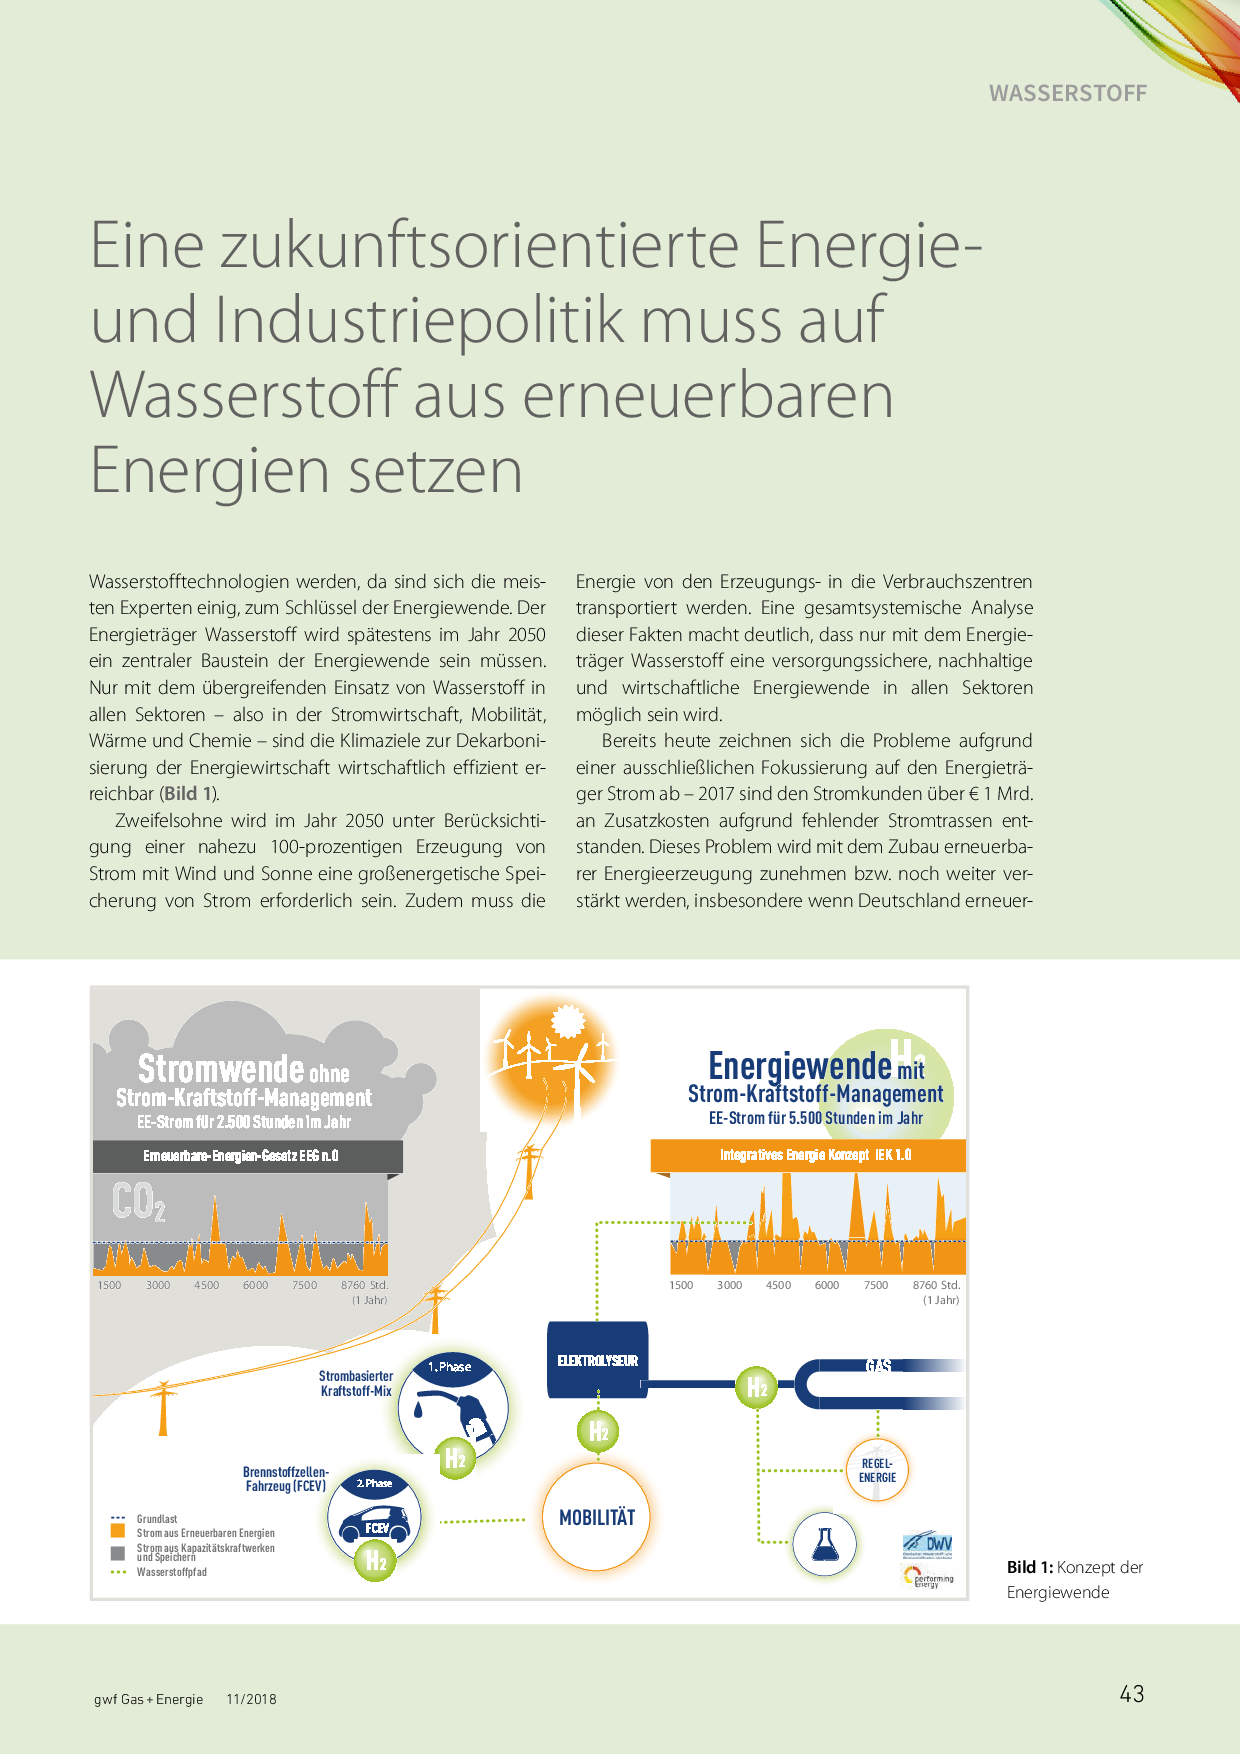 Eine zukunftsorientierte Energie- und Industriepolitik muss auf Wasserstoff aus erneuerbaren Energien setzen